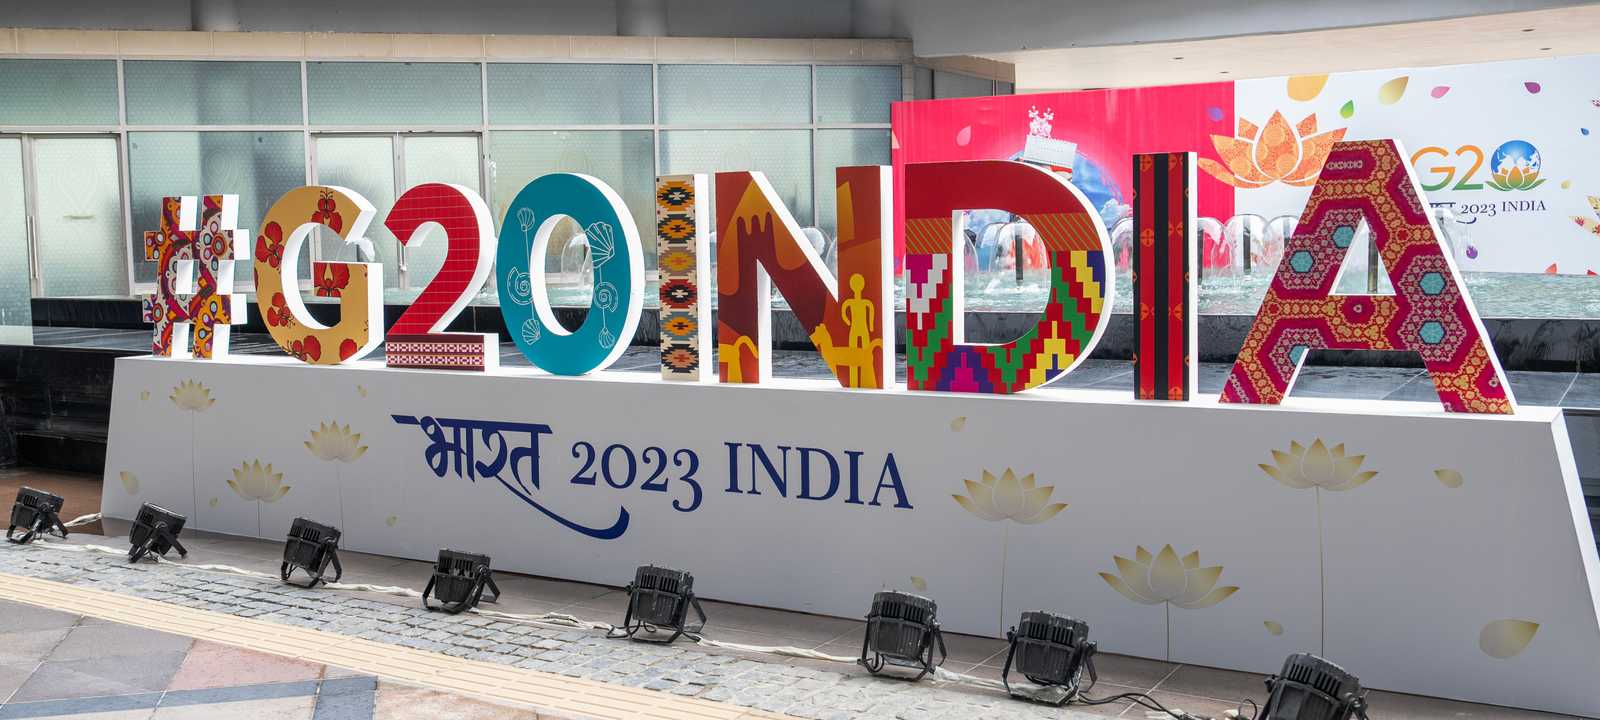 الهند تستضيف قمة مجموعة العشرين